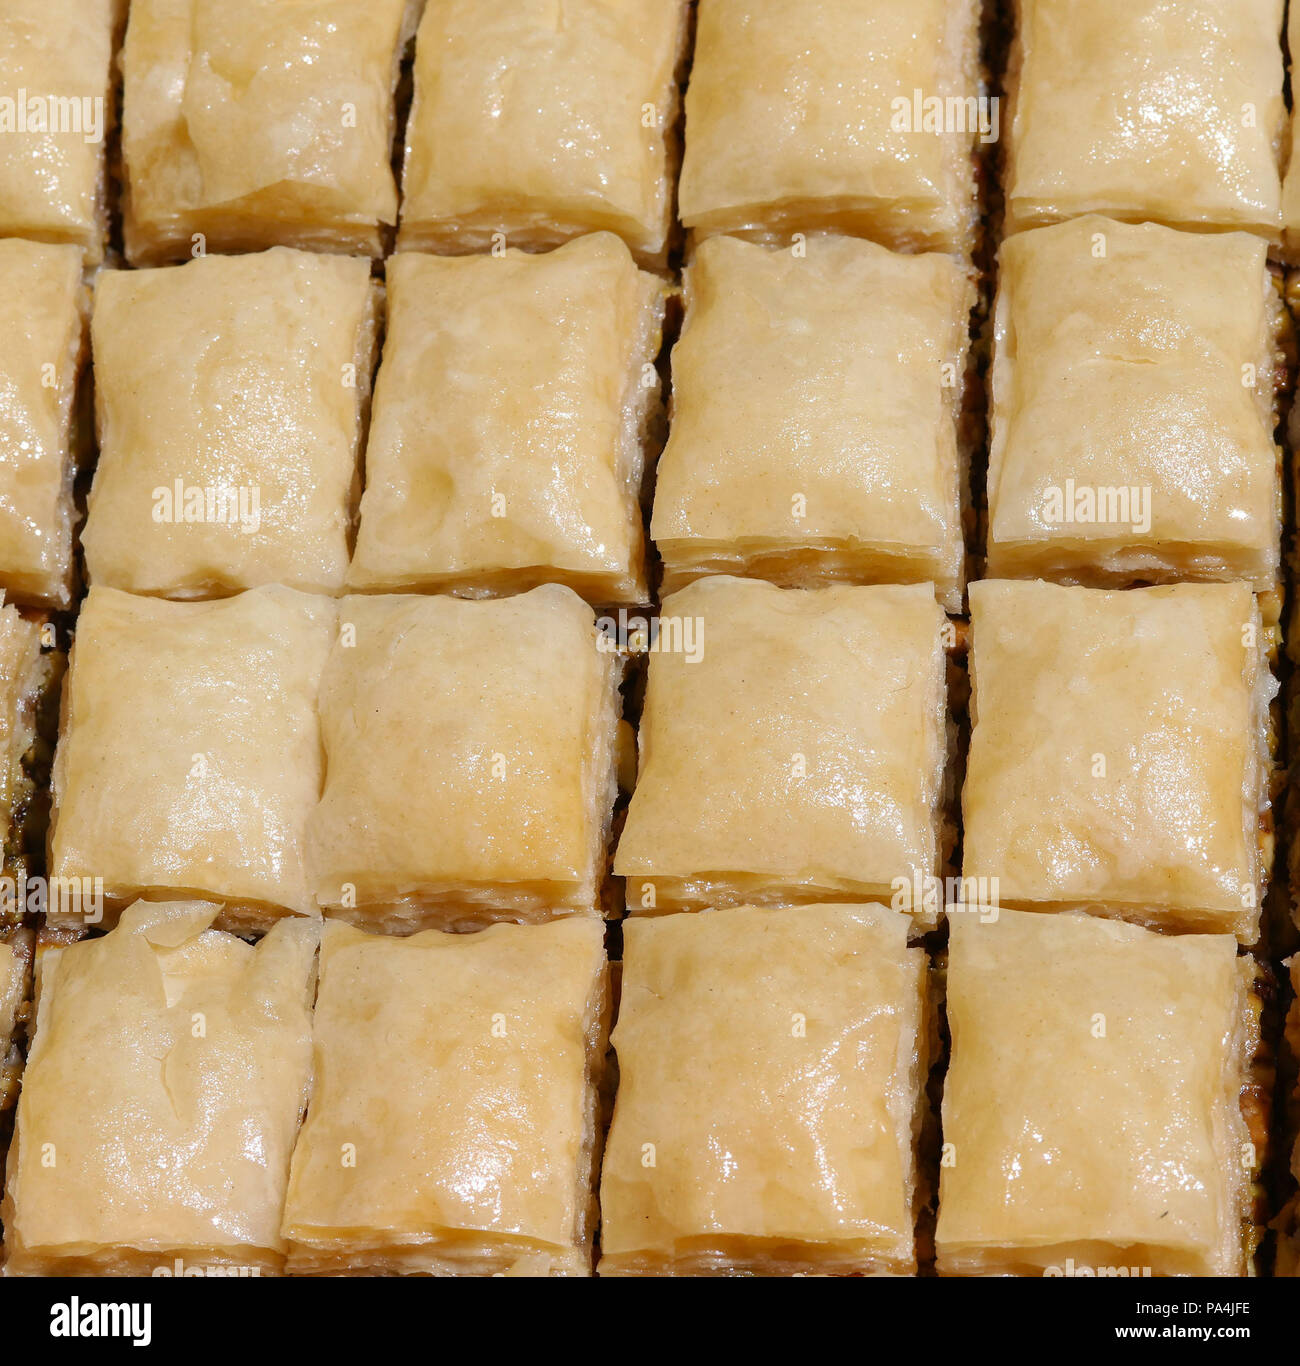 Baklava in a pan Stock Photo